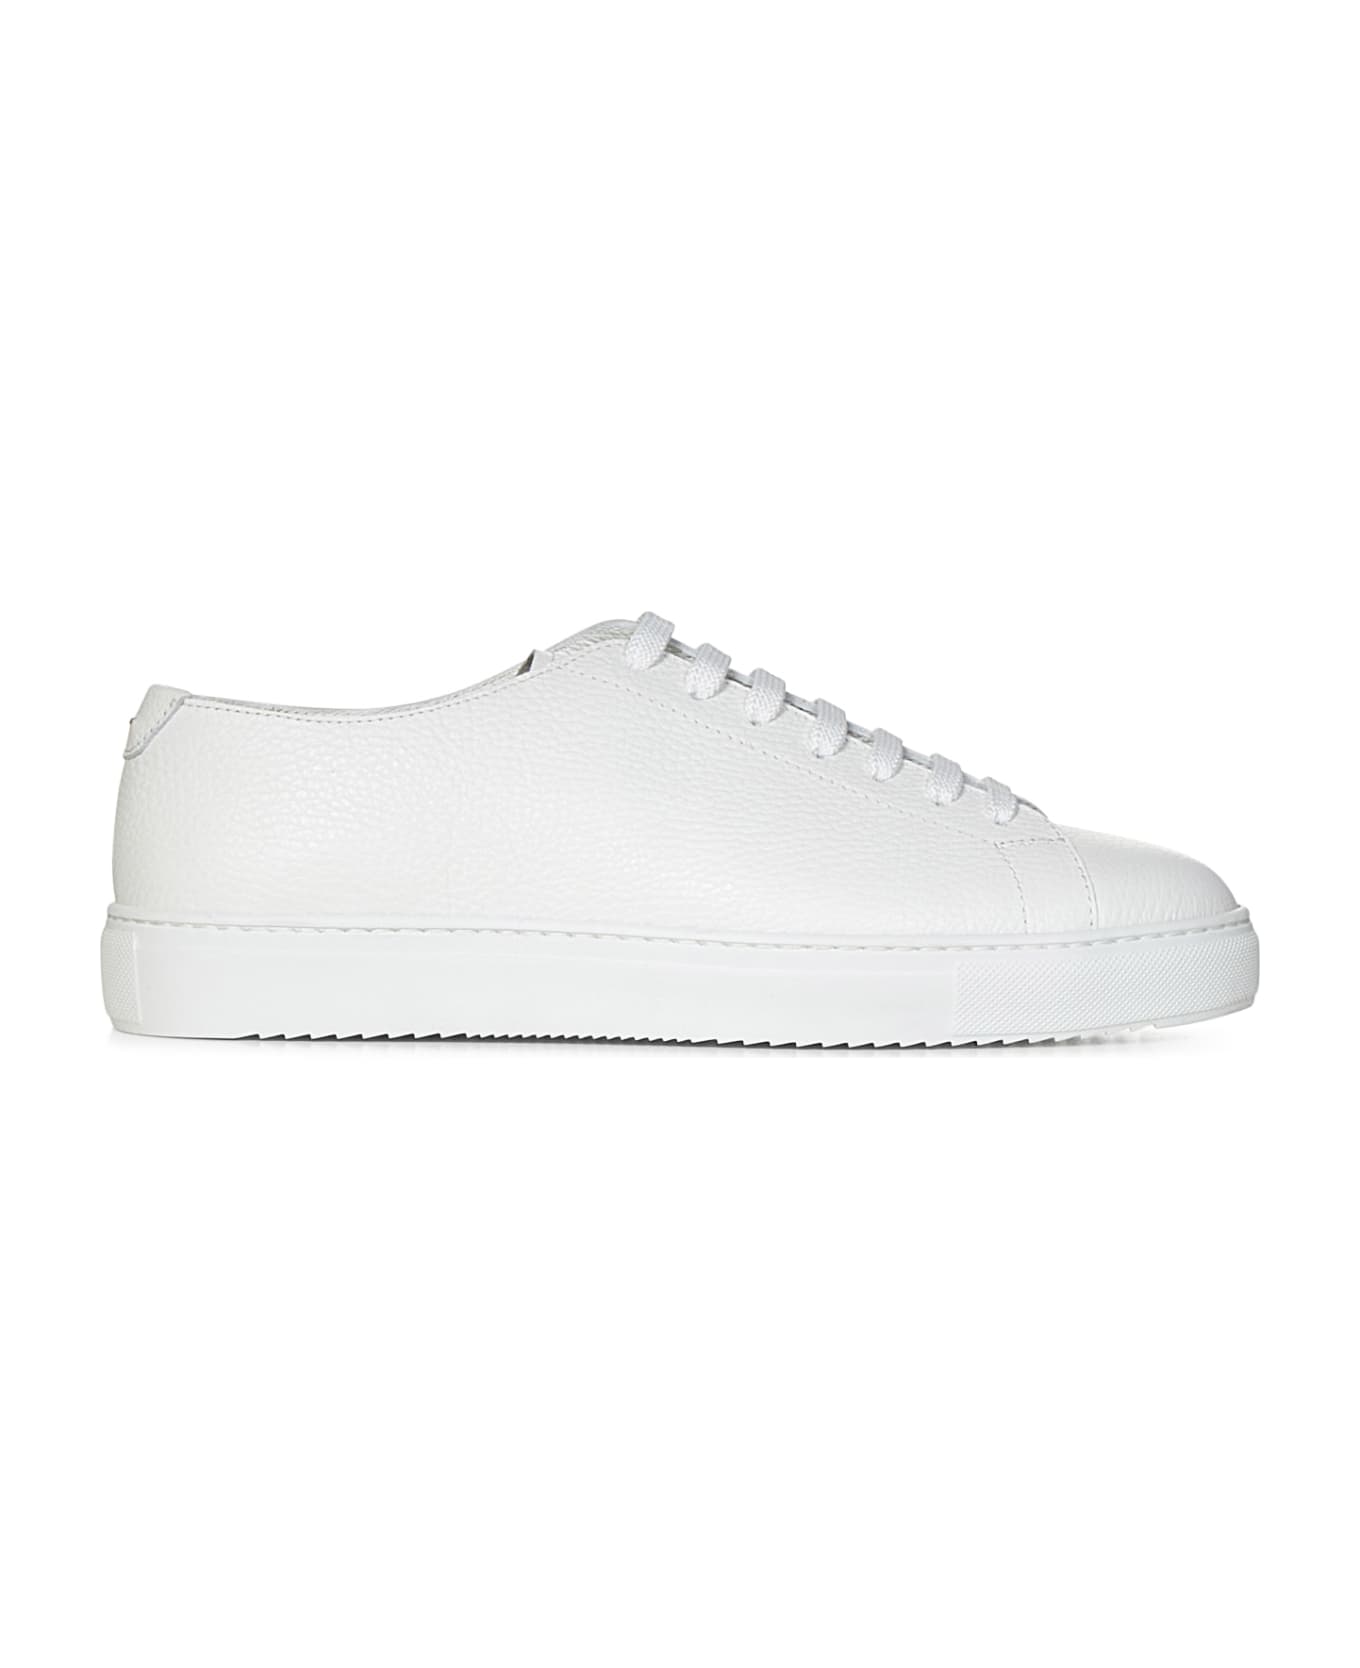 Doucal's Sneakers - White スニーカー